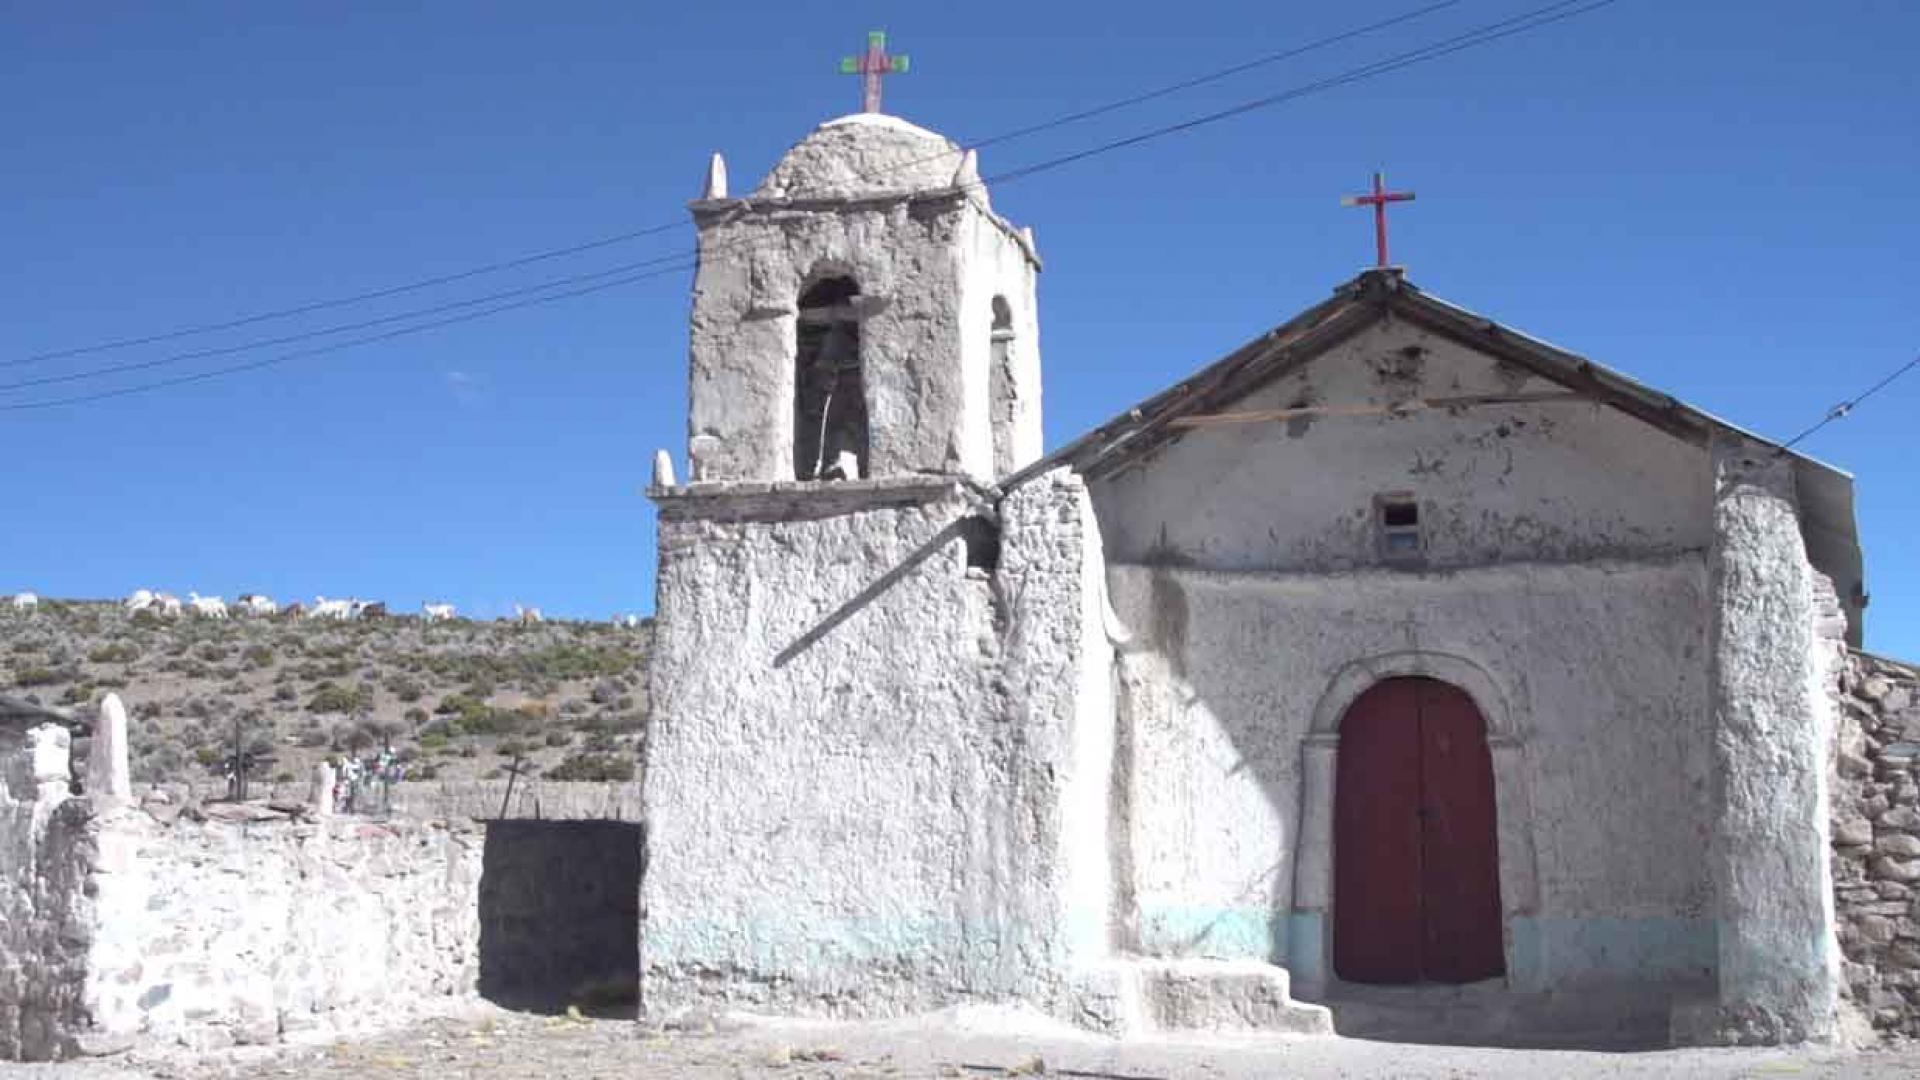 Imagen de Iglesias del Altiplano en Guacollo y Putani se convierten en Monumento Nacional